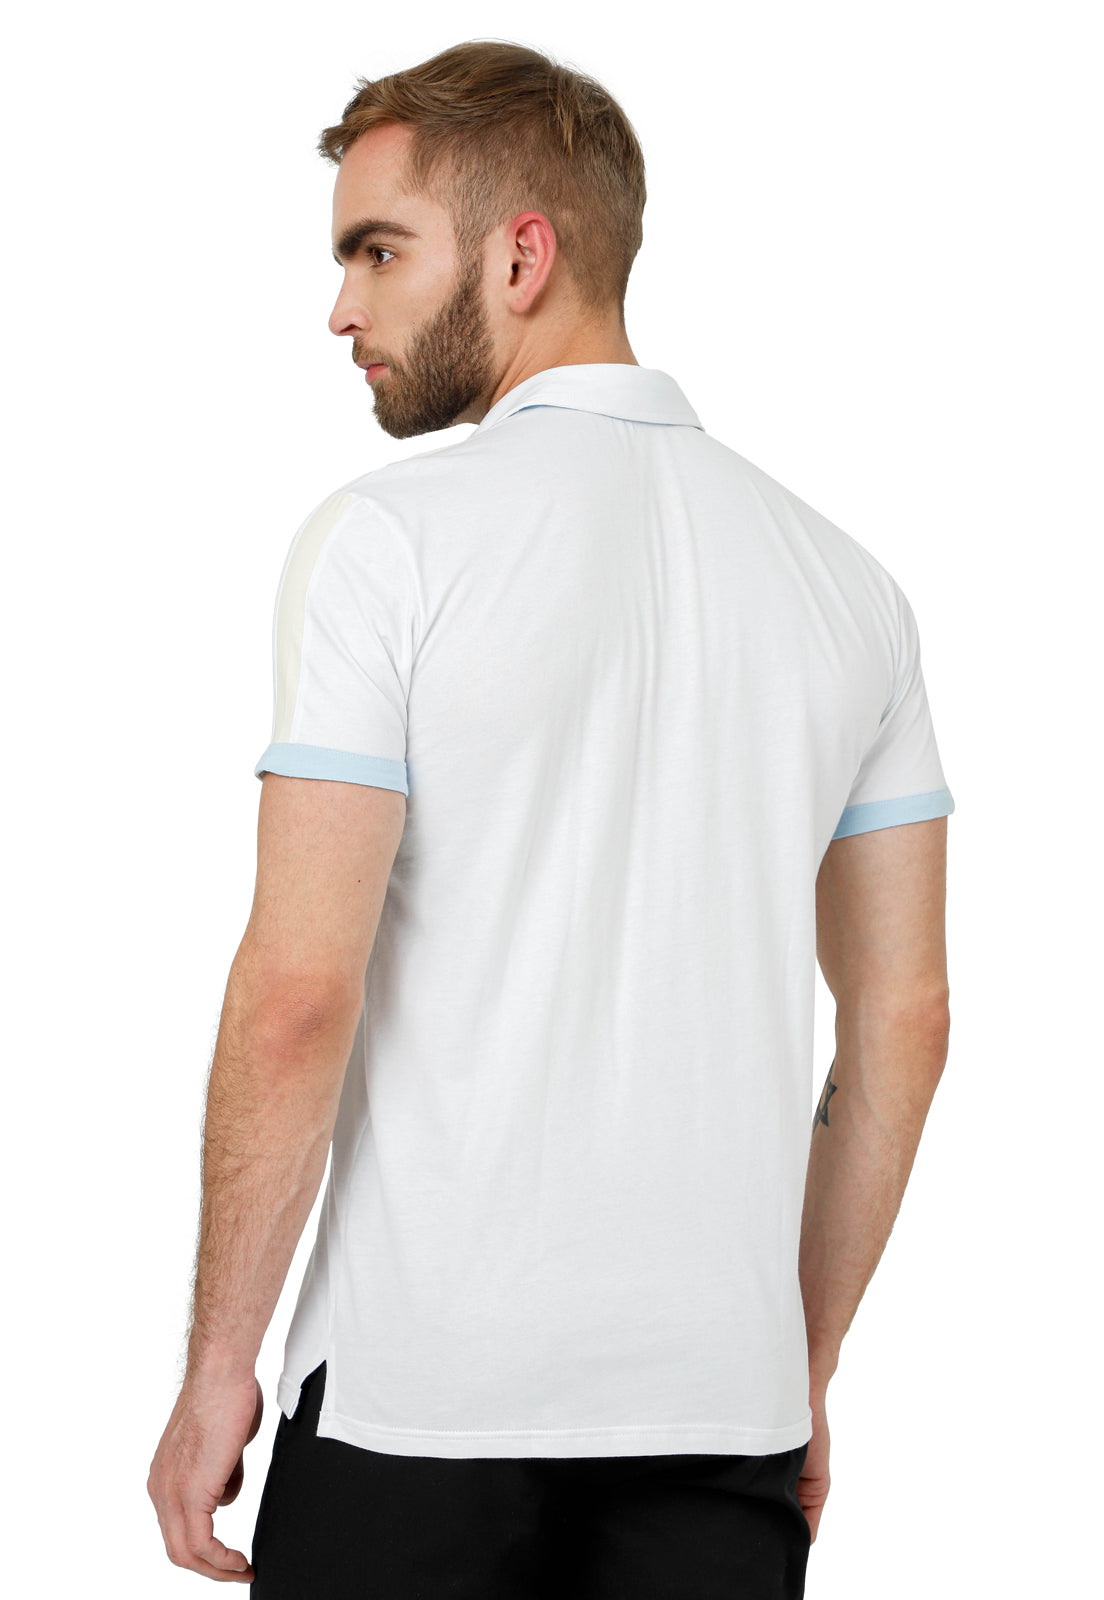 Camisa Polo blanca camisa de Polo de algodón Chic para hombres